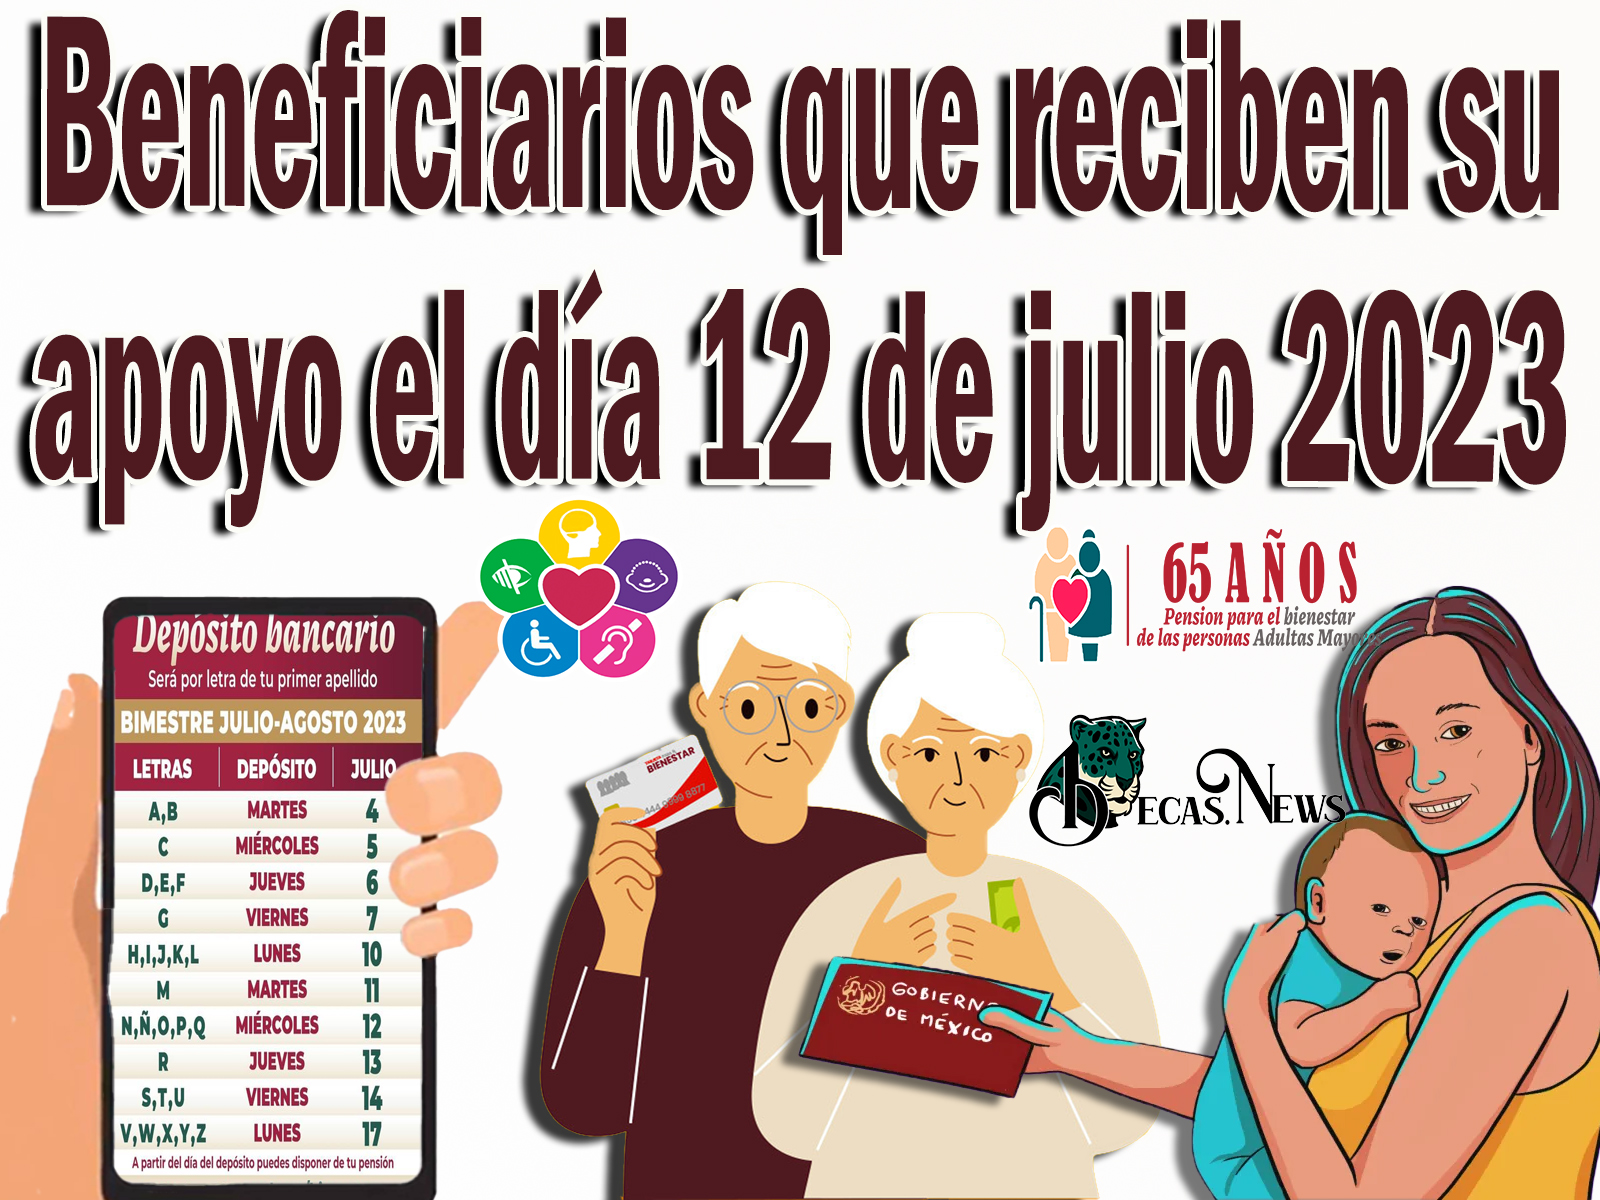 Pensión Bienestar: Beneficiarios que reciben su apoyo el día 12 de julio 2023 